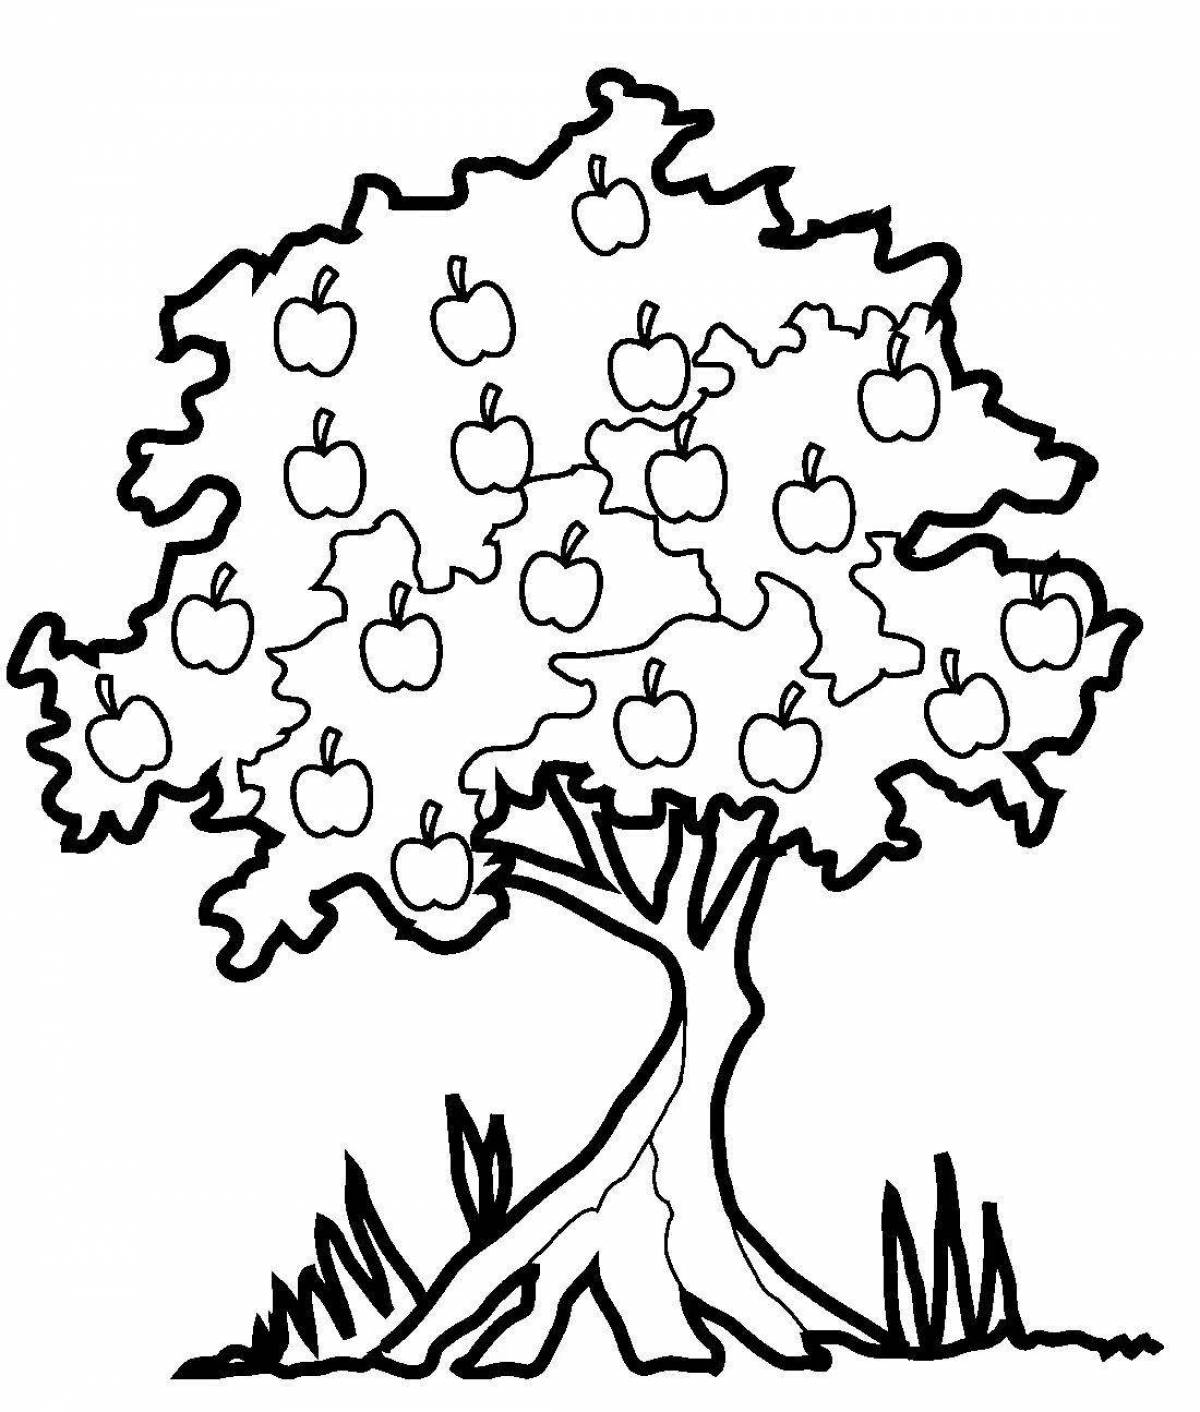 Fertile apple tree for babies